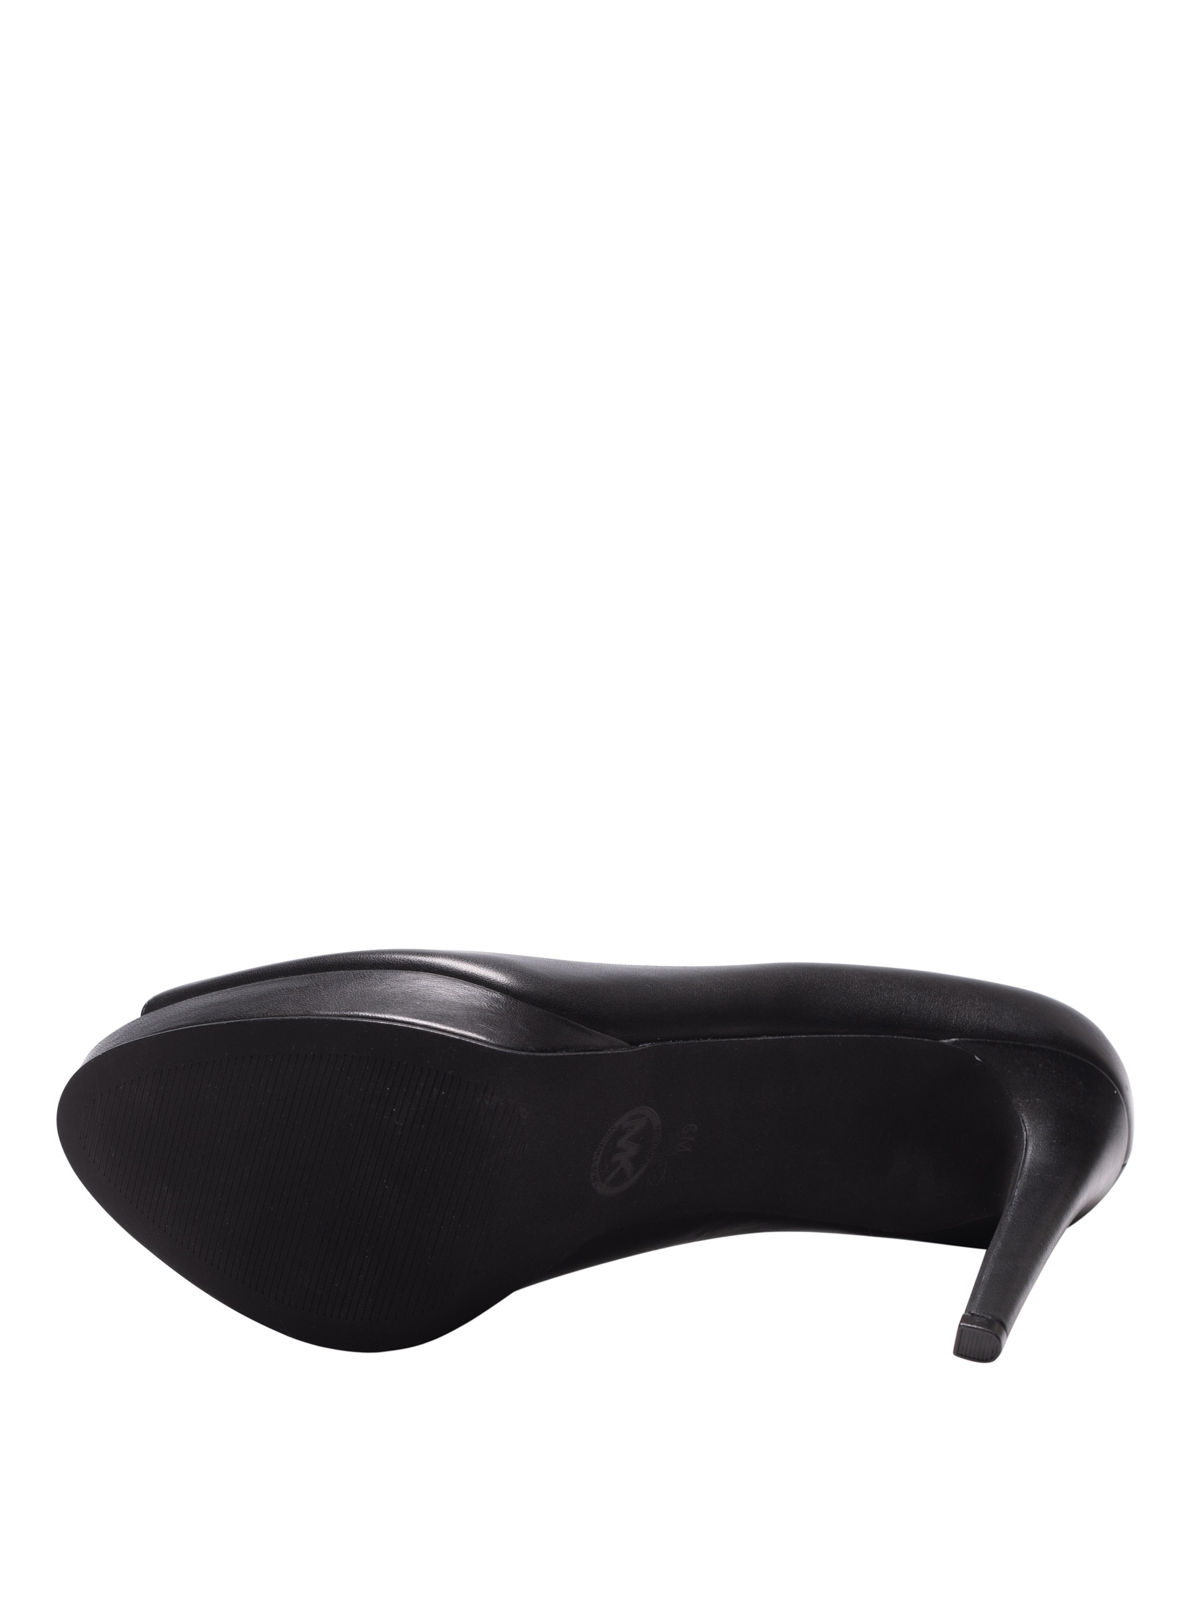 Court shoes Michael Kors - Erika black leather peep toe platform pumps -  40S8ERHP1L001